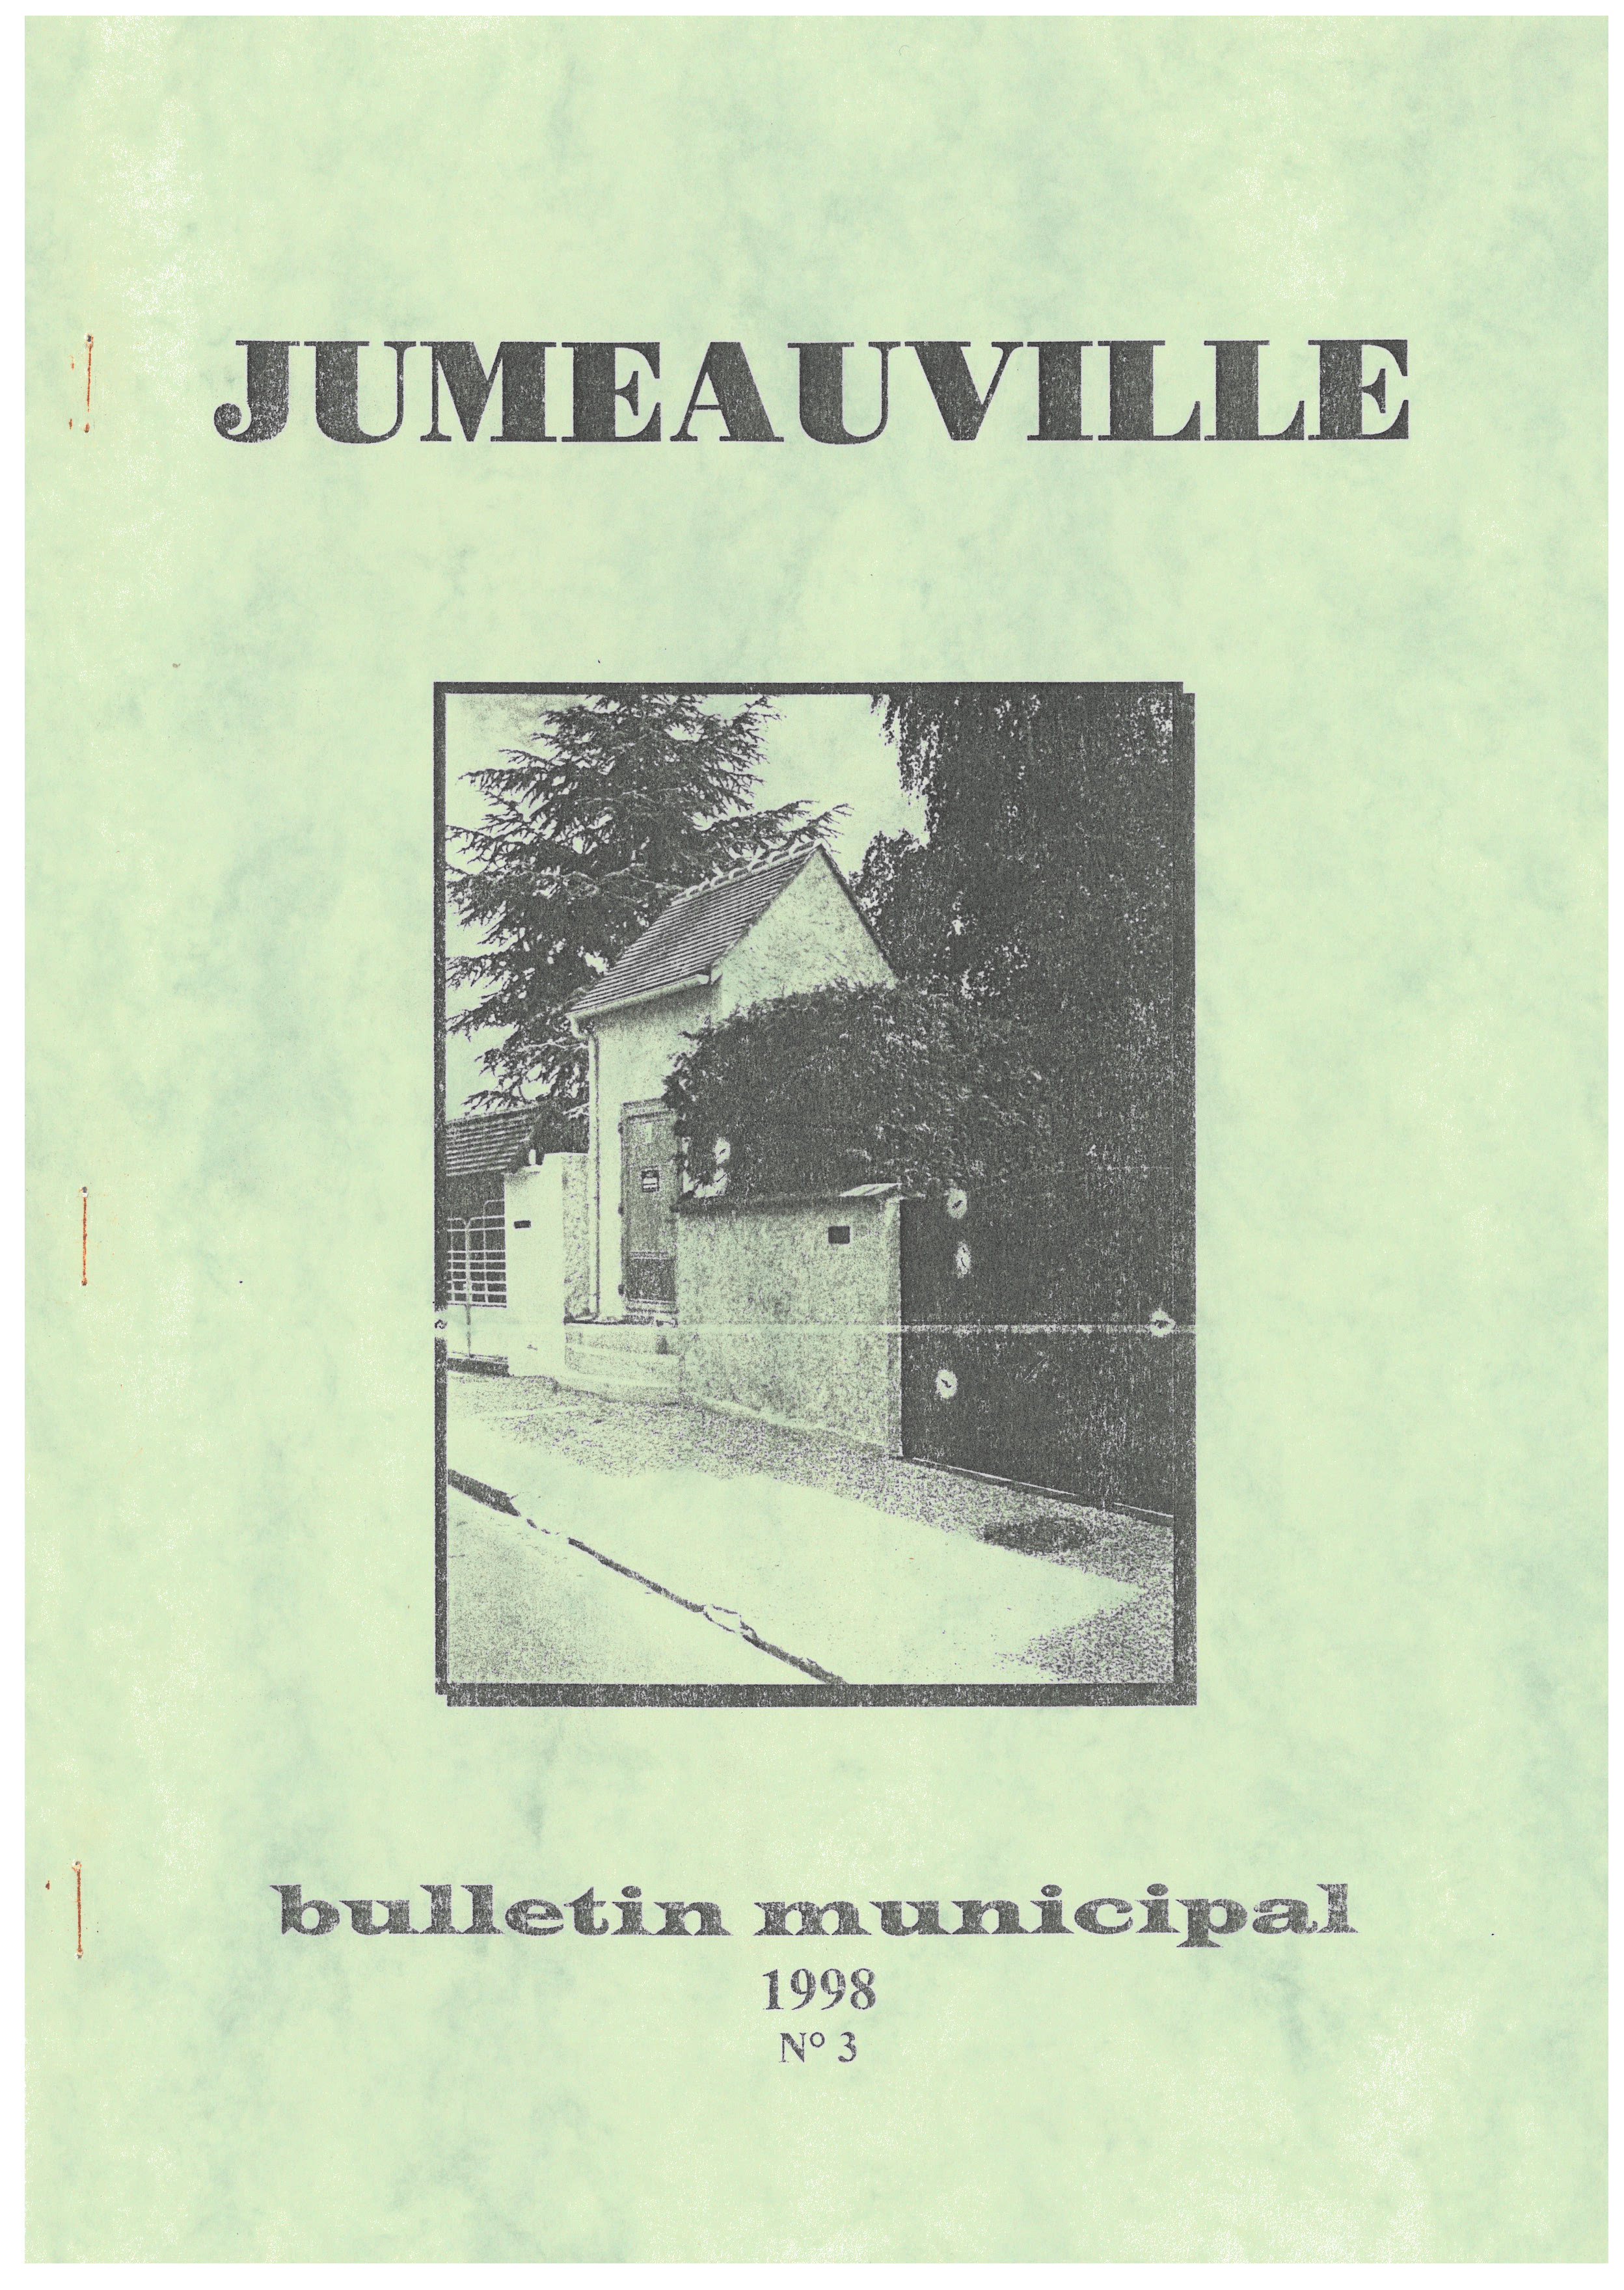 Bulletin Municipal 3 1998